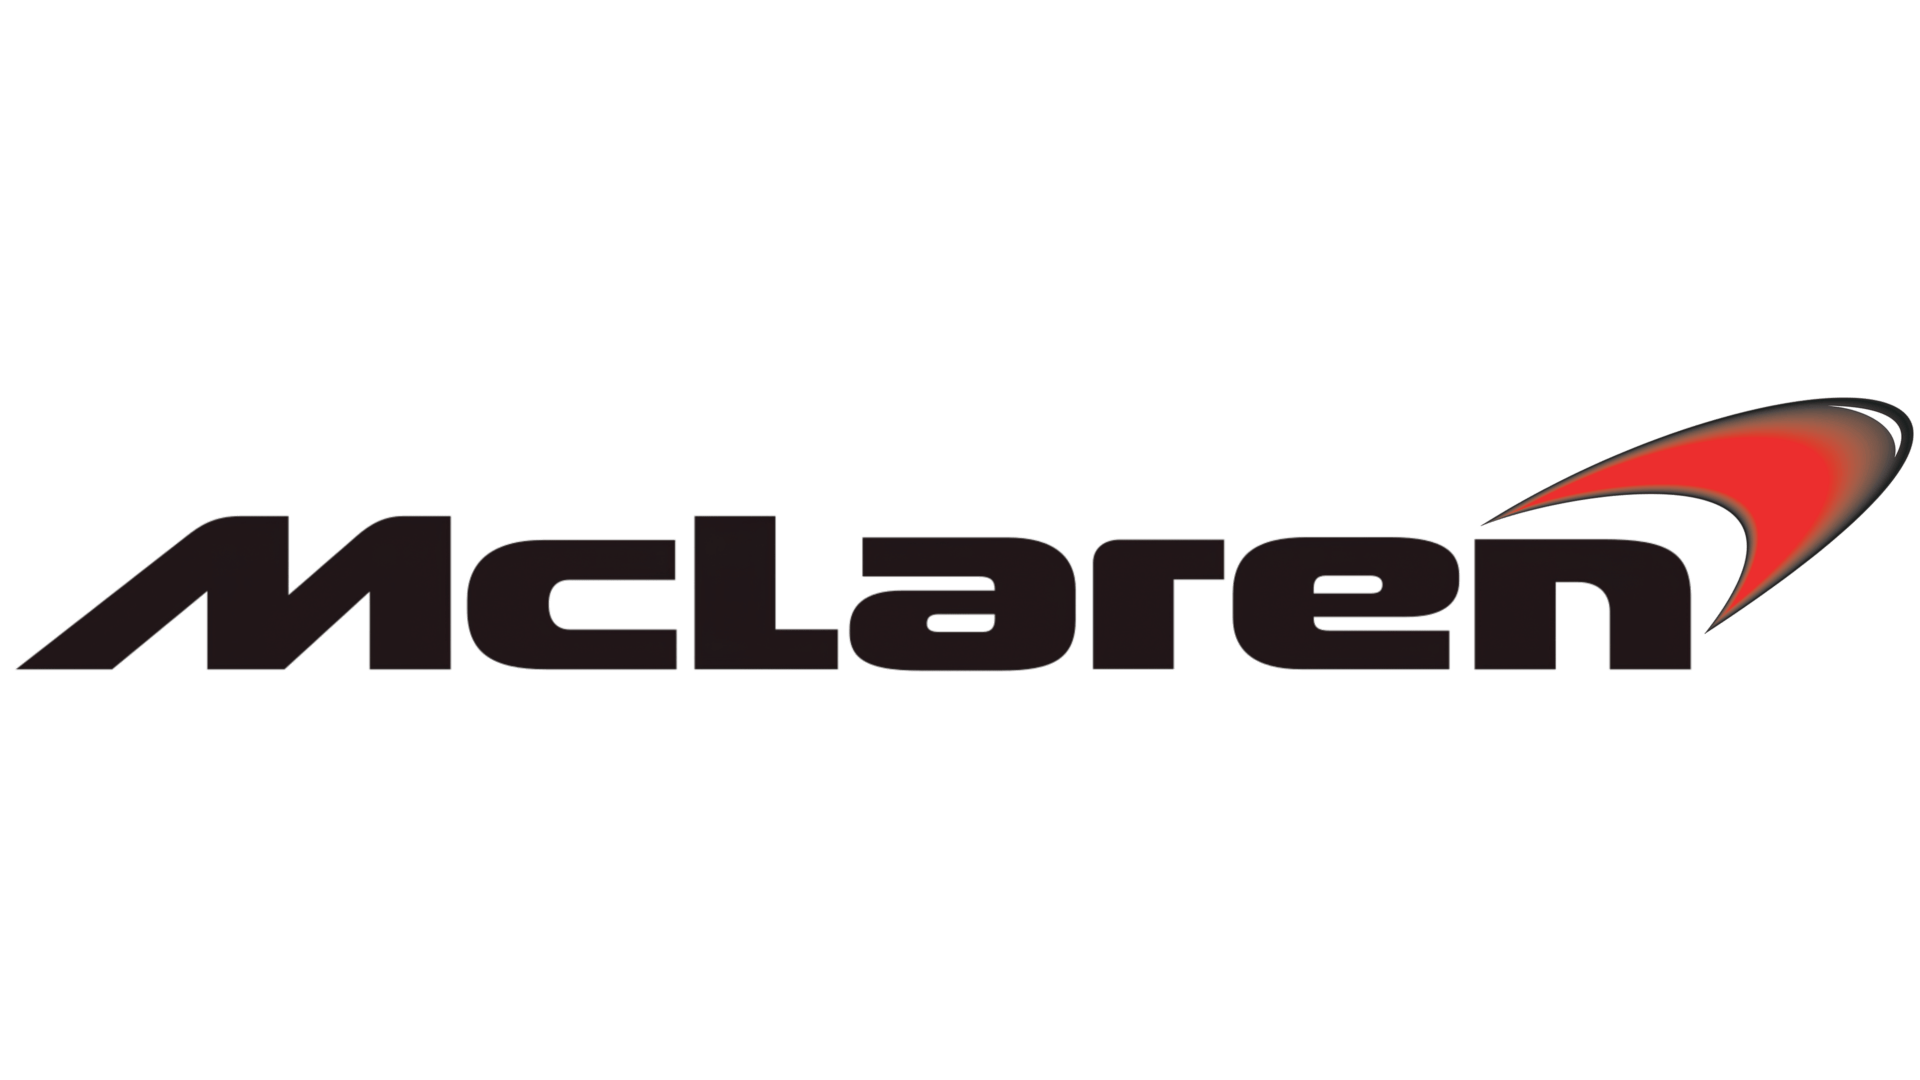 Mclaren Logo